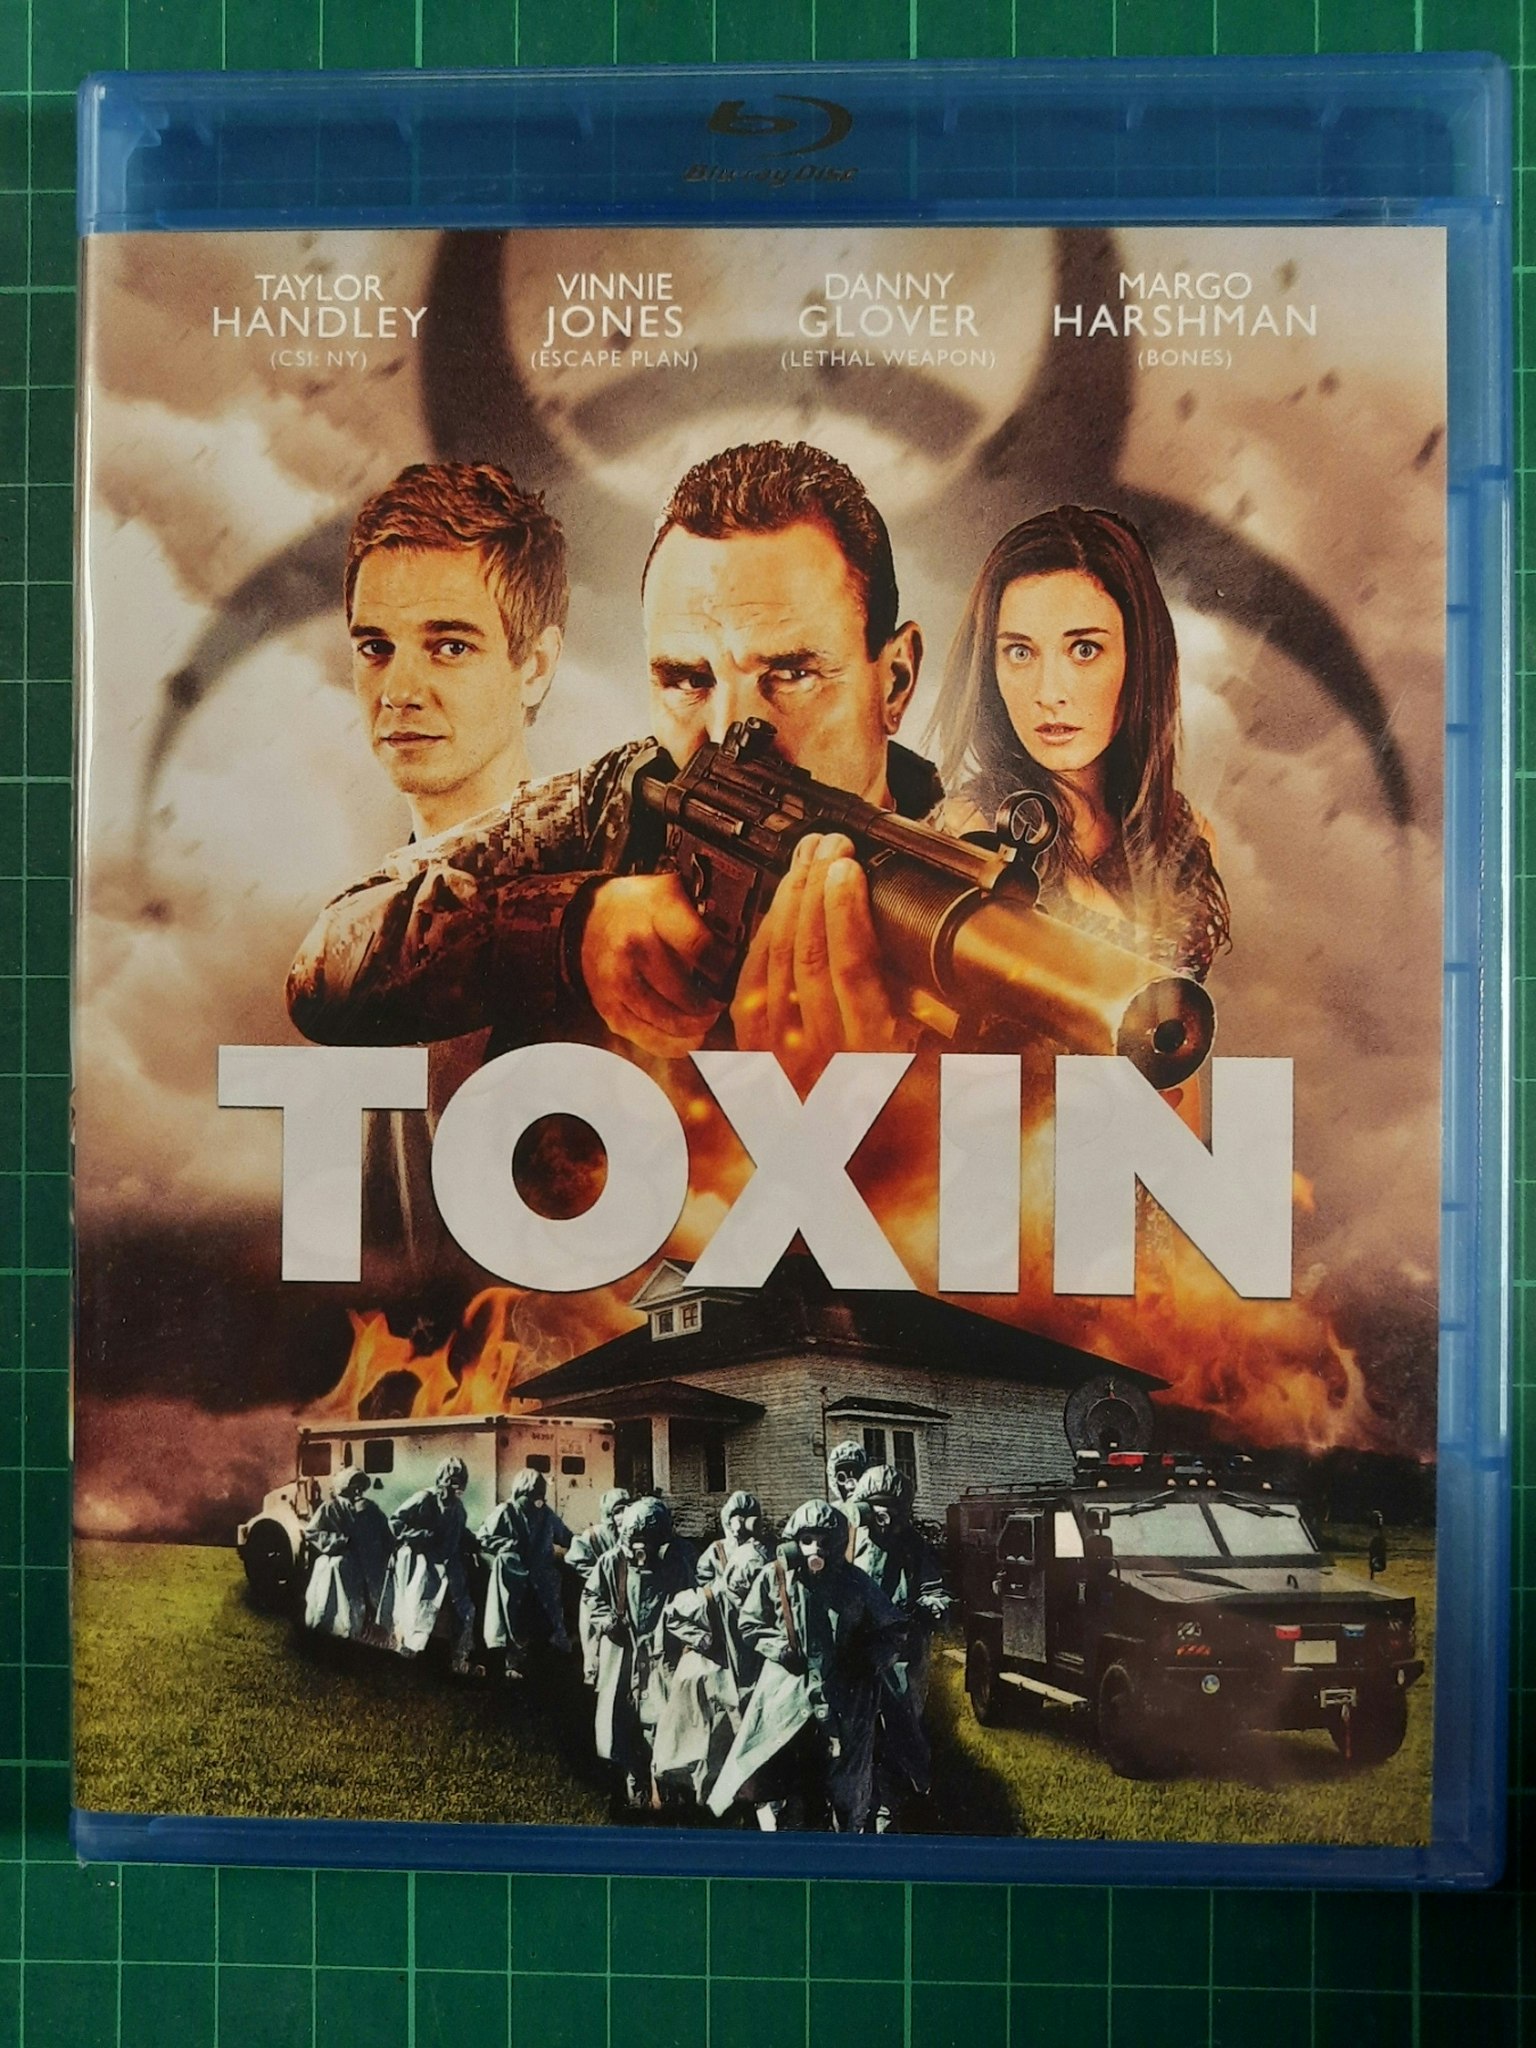 Blu-ray : Toxin